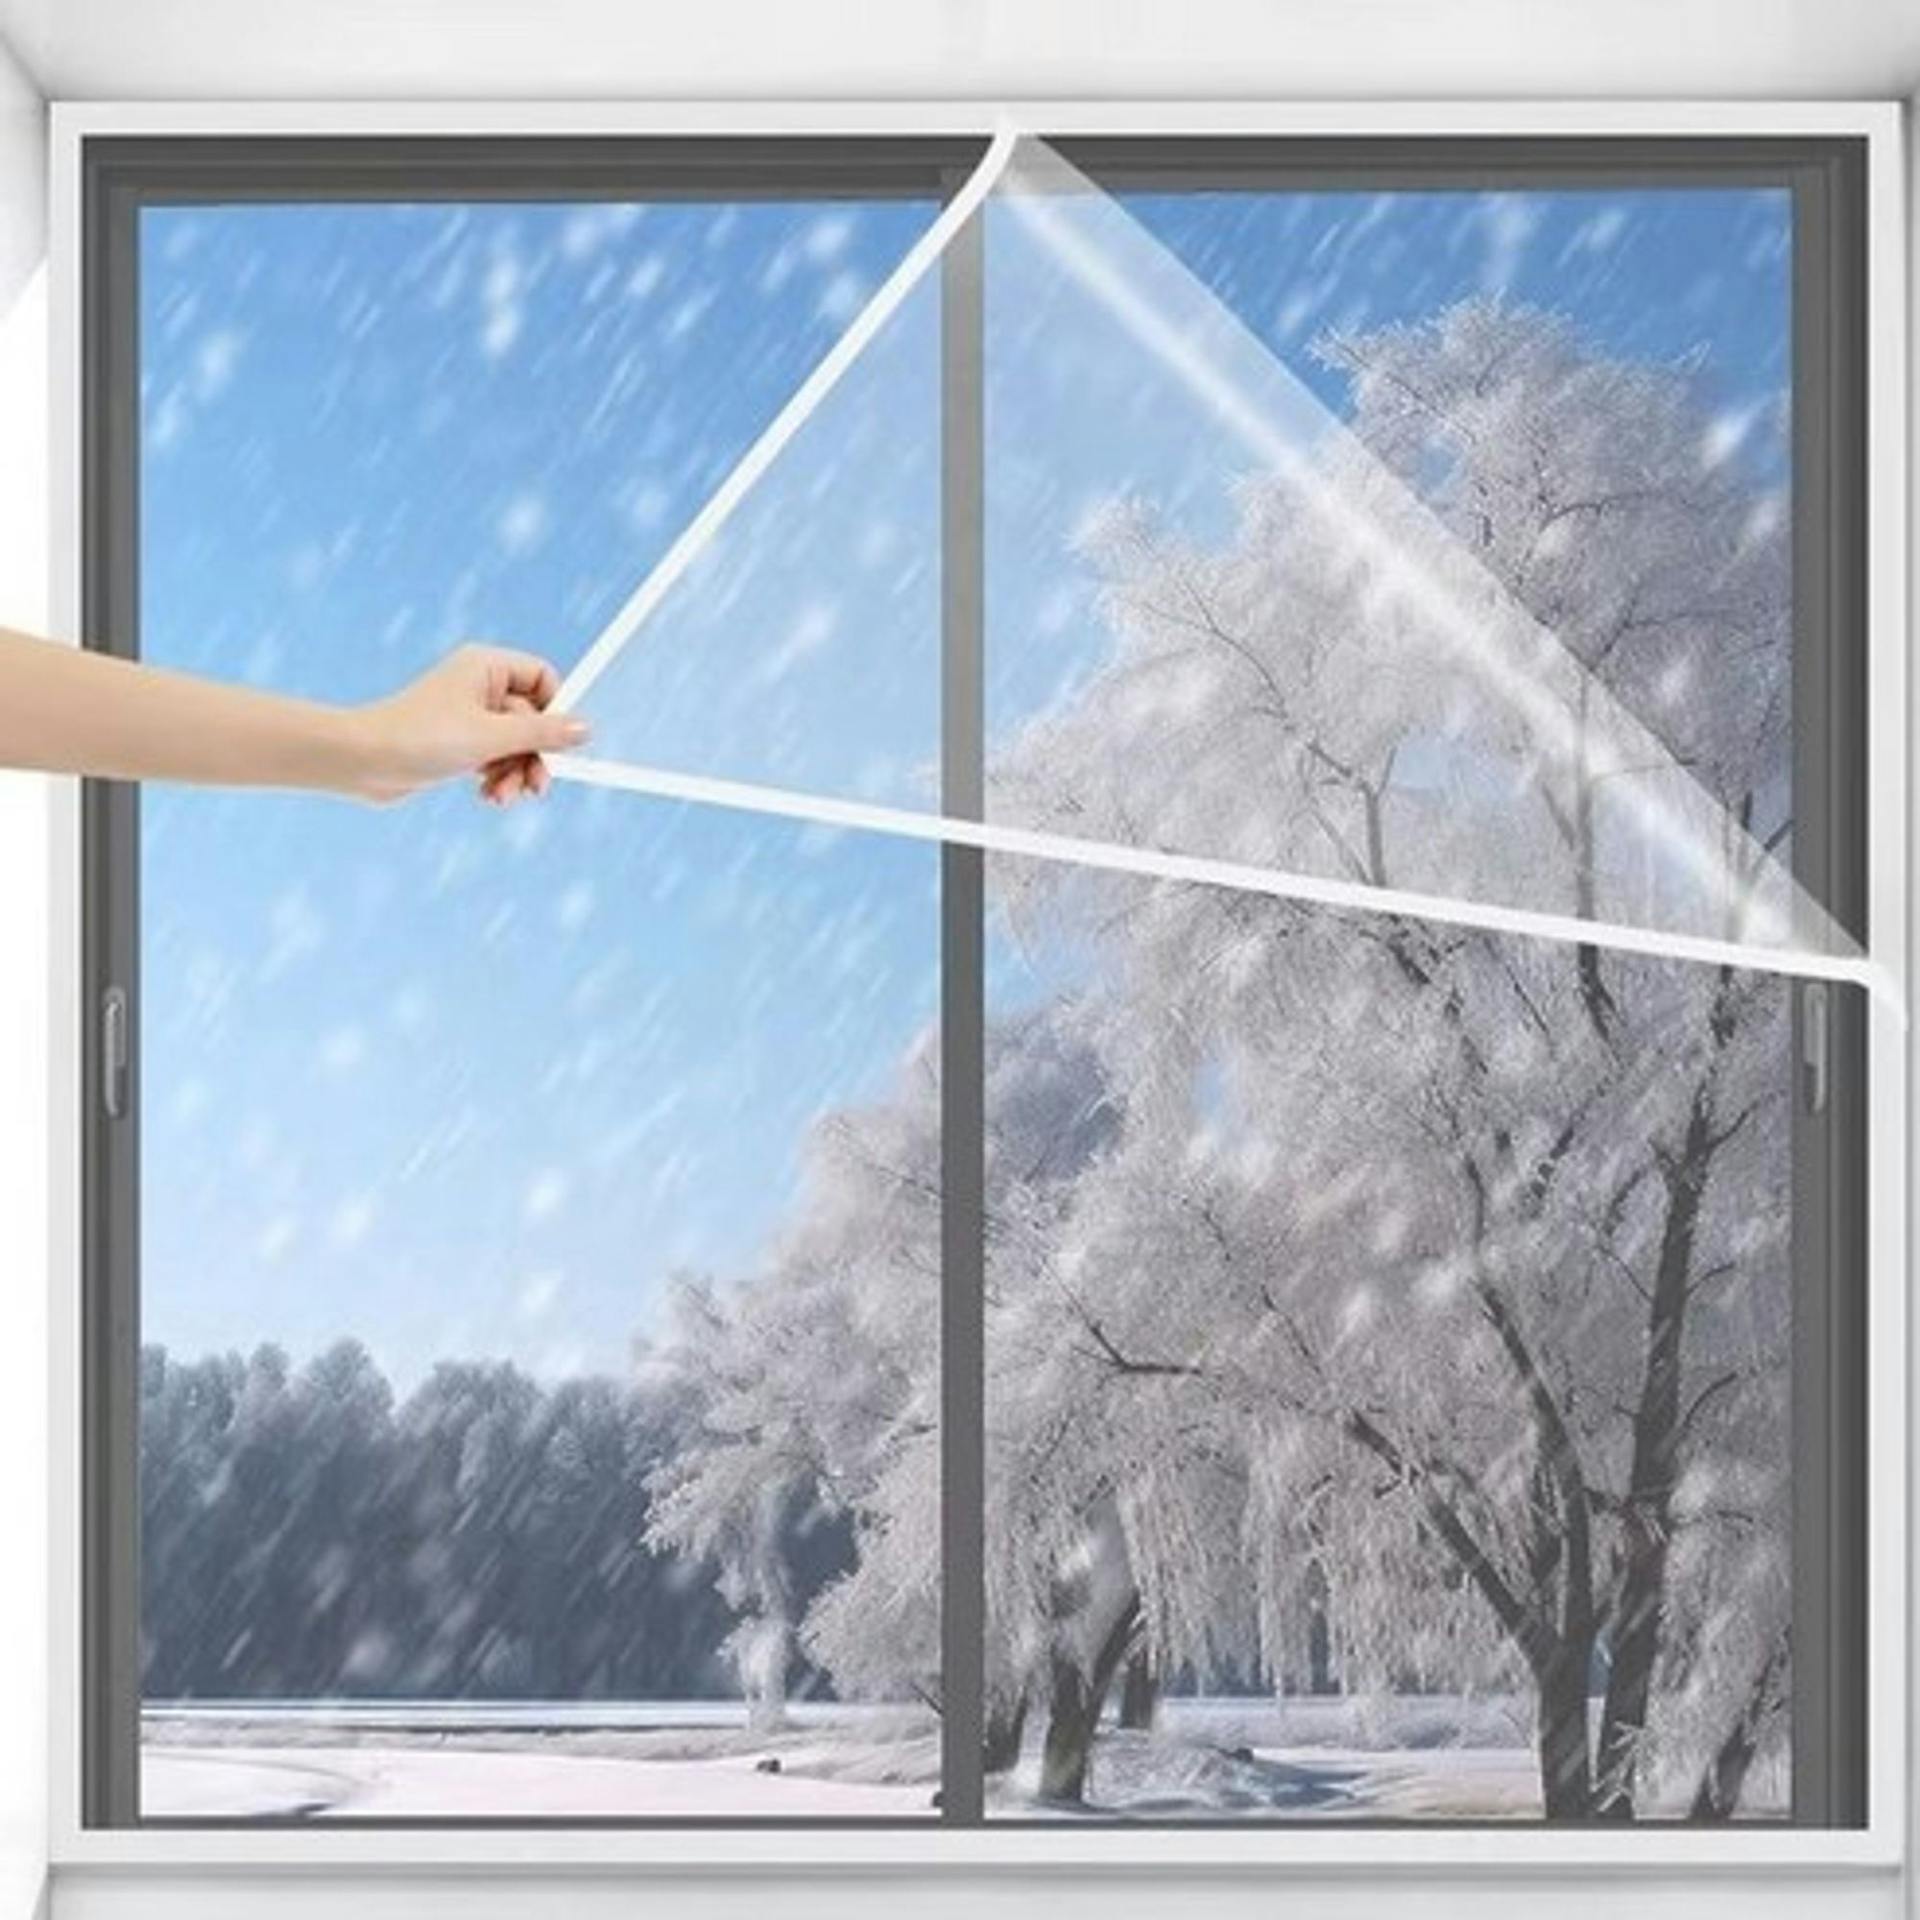 웃풍 차단 살림앤 대형 외풍차단 창문 방풍비닐 - 겨울철 창문을 보호해주는 실용적인 아이템 가격비교